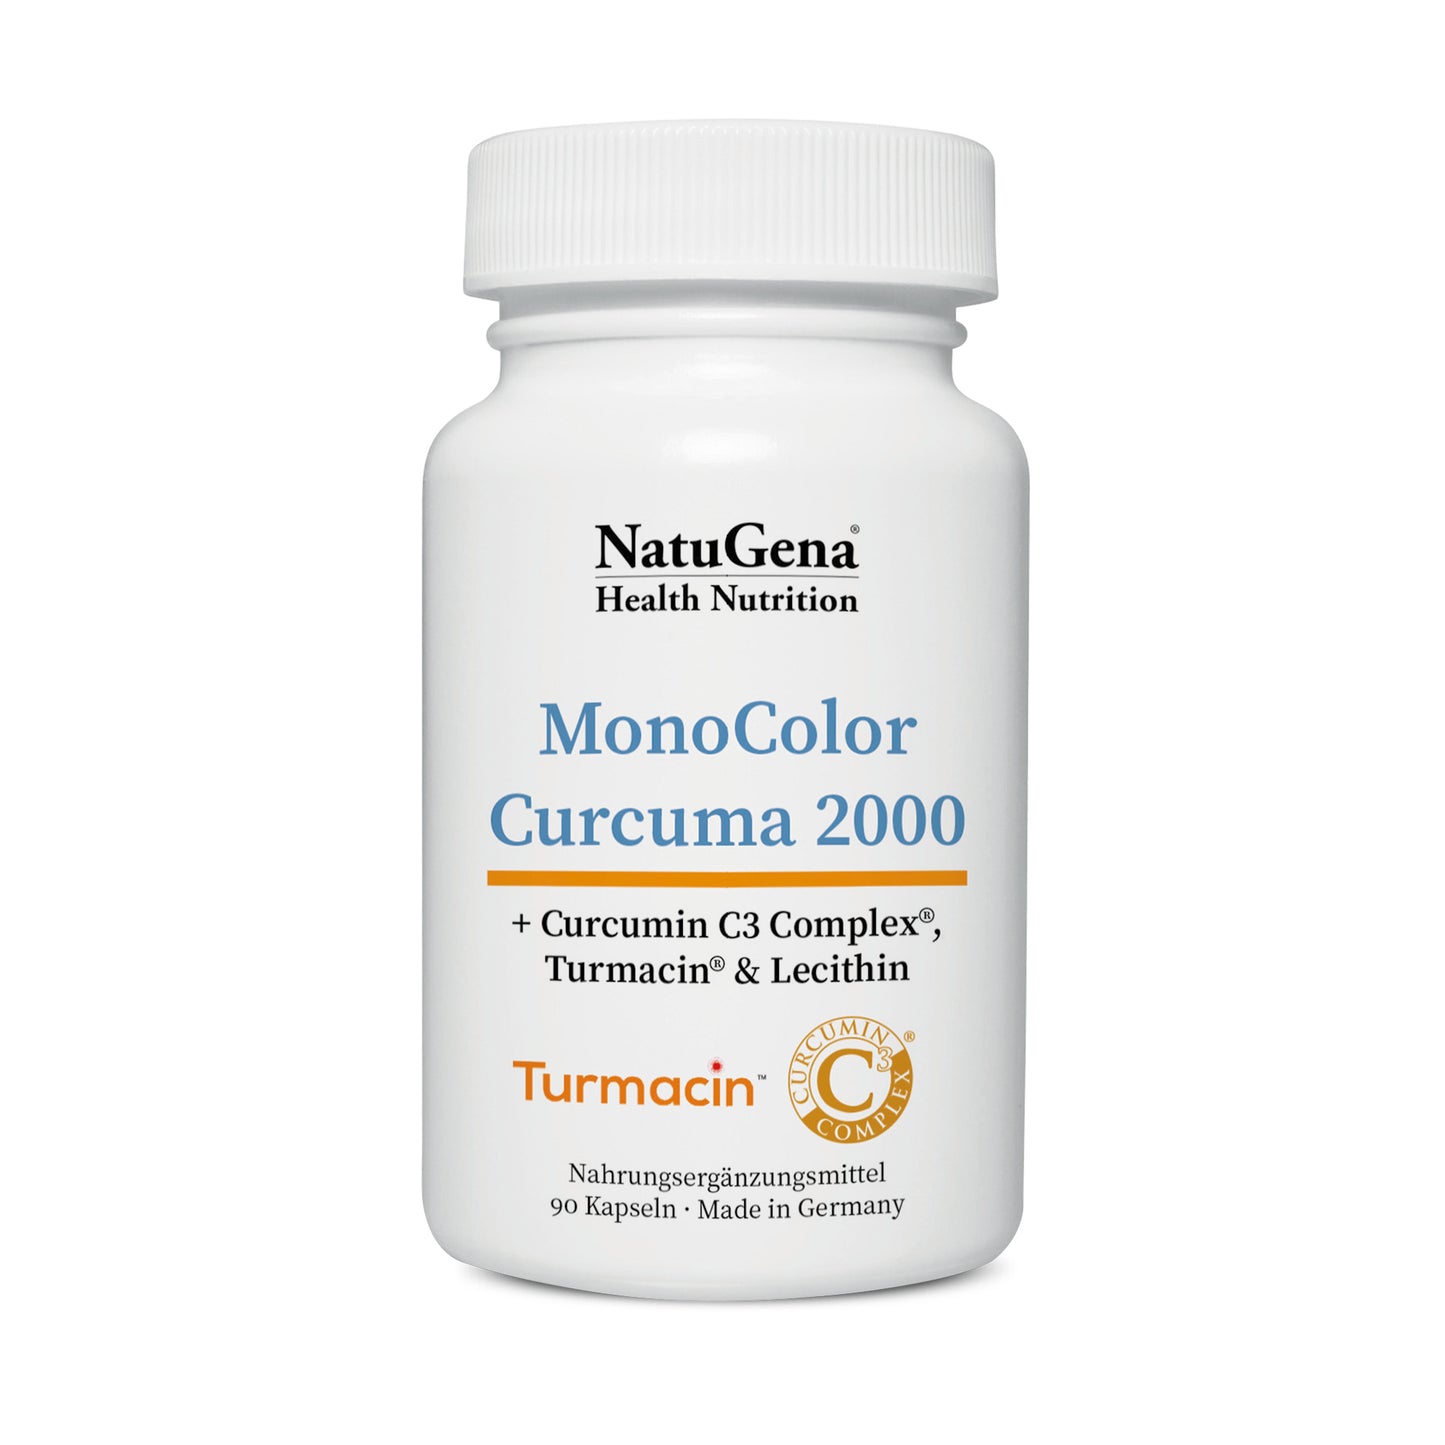 MonoColor Curcuma 2000 + Curcumin C3 Complex®, Turmacin® & Lecithin